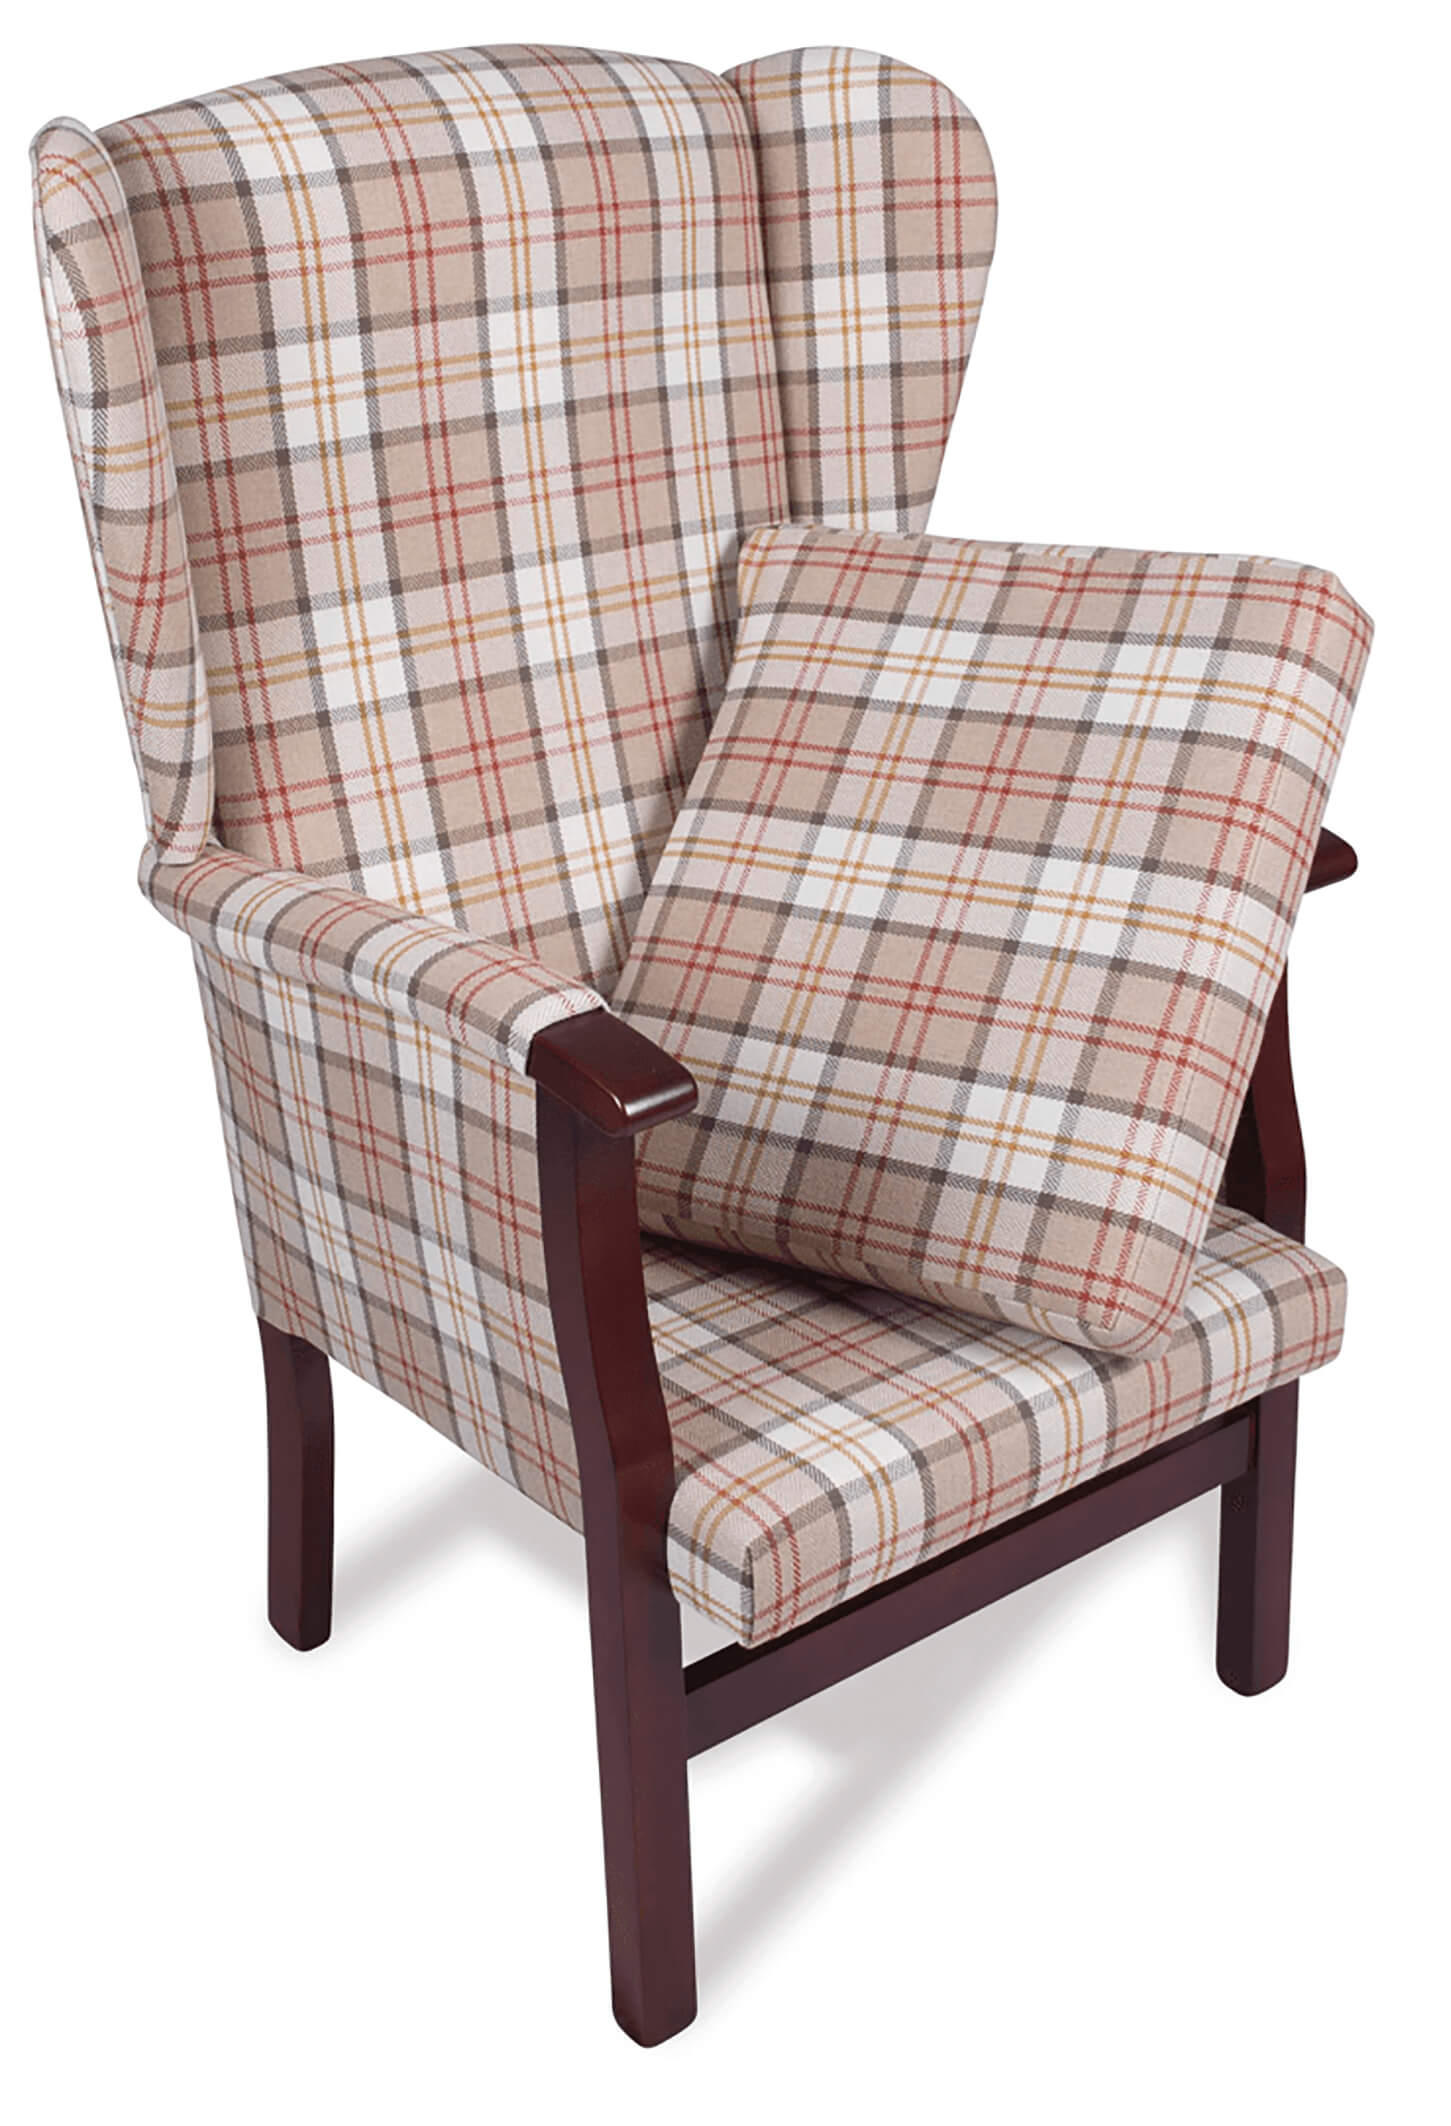 Dorset Fireside Chair